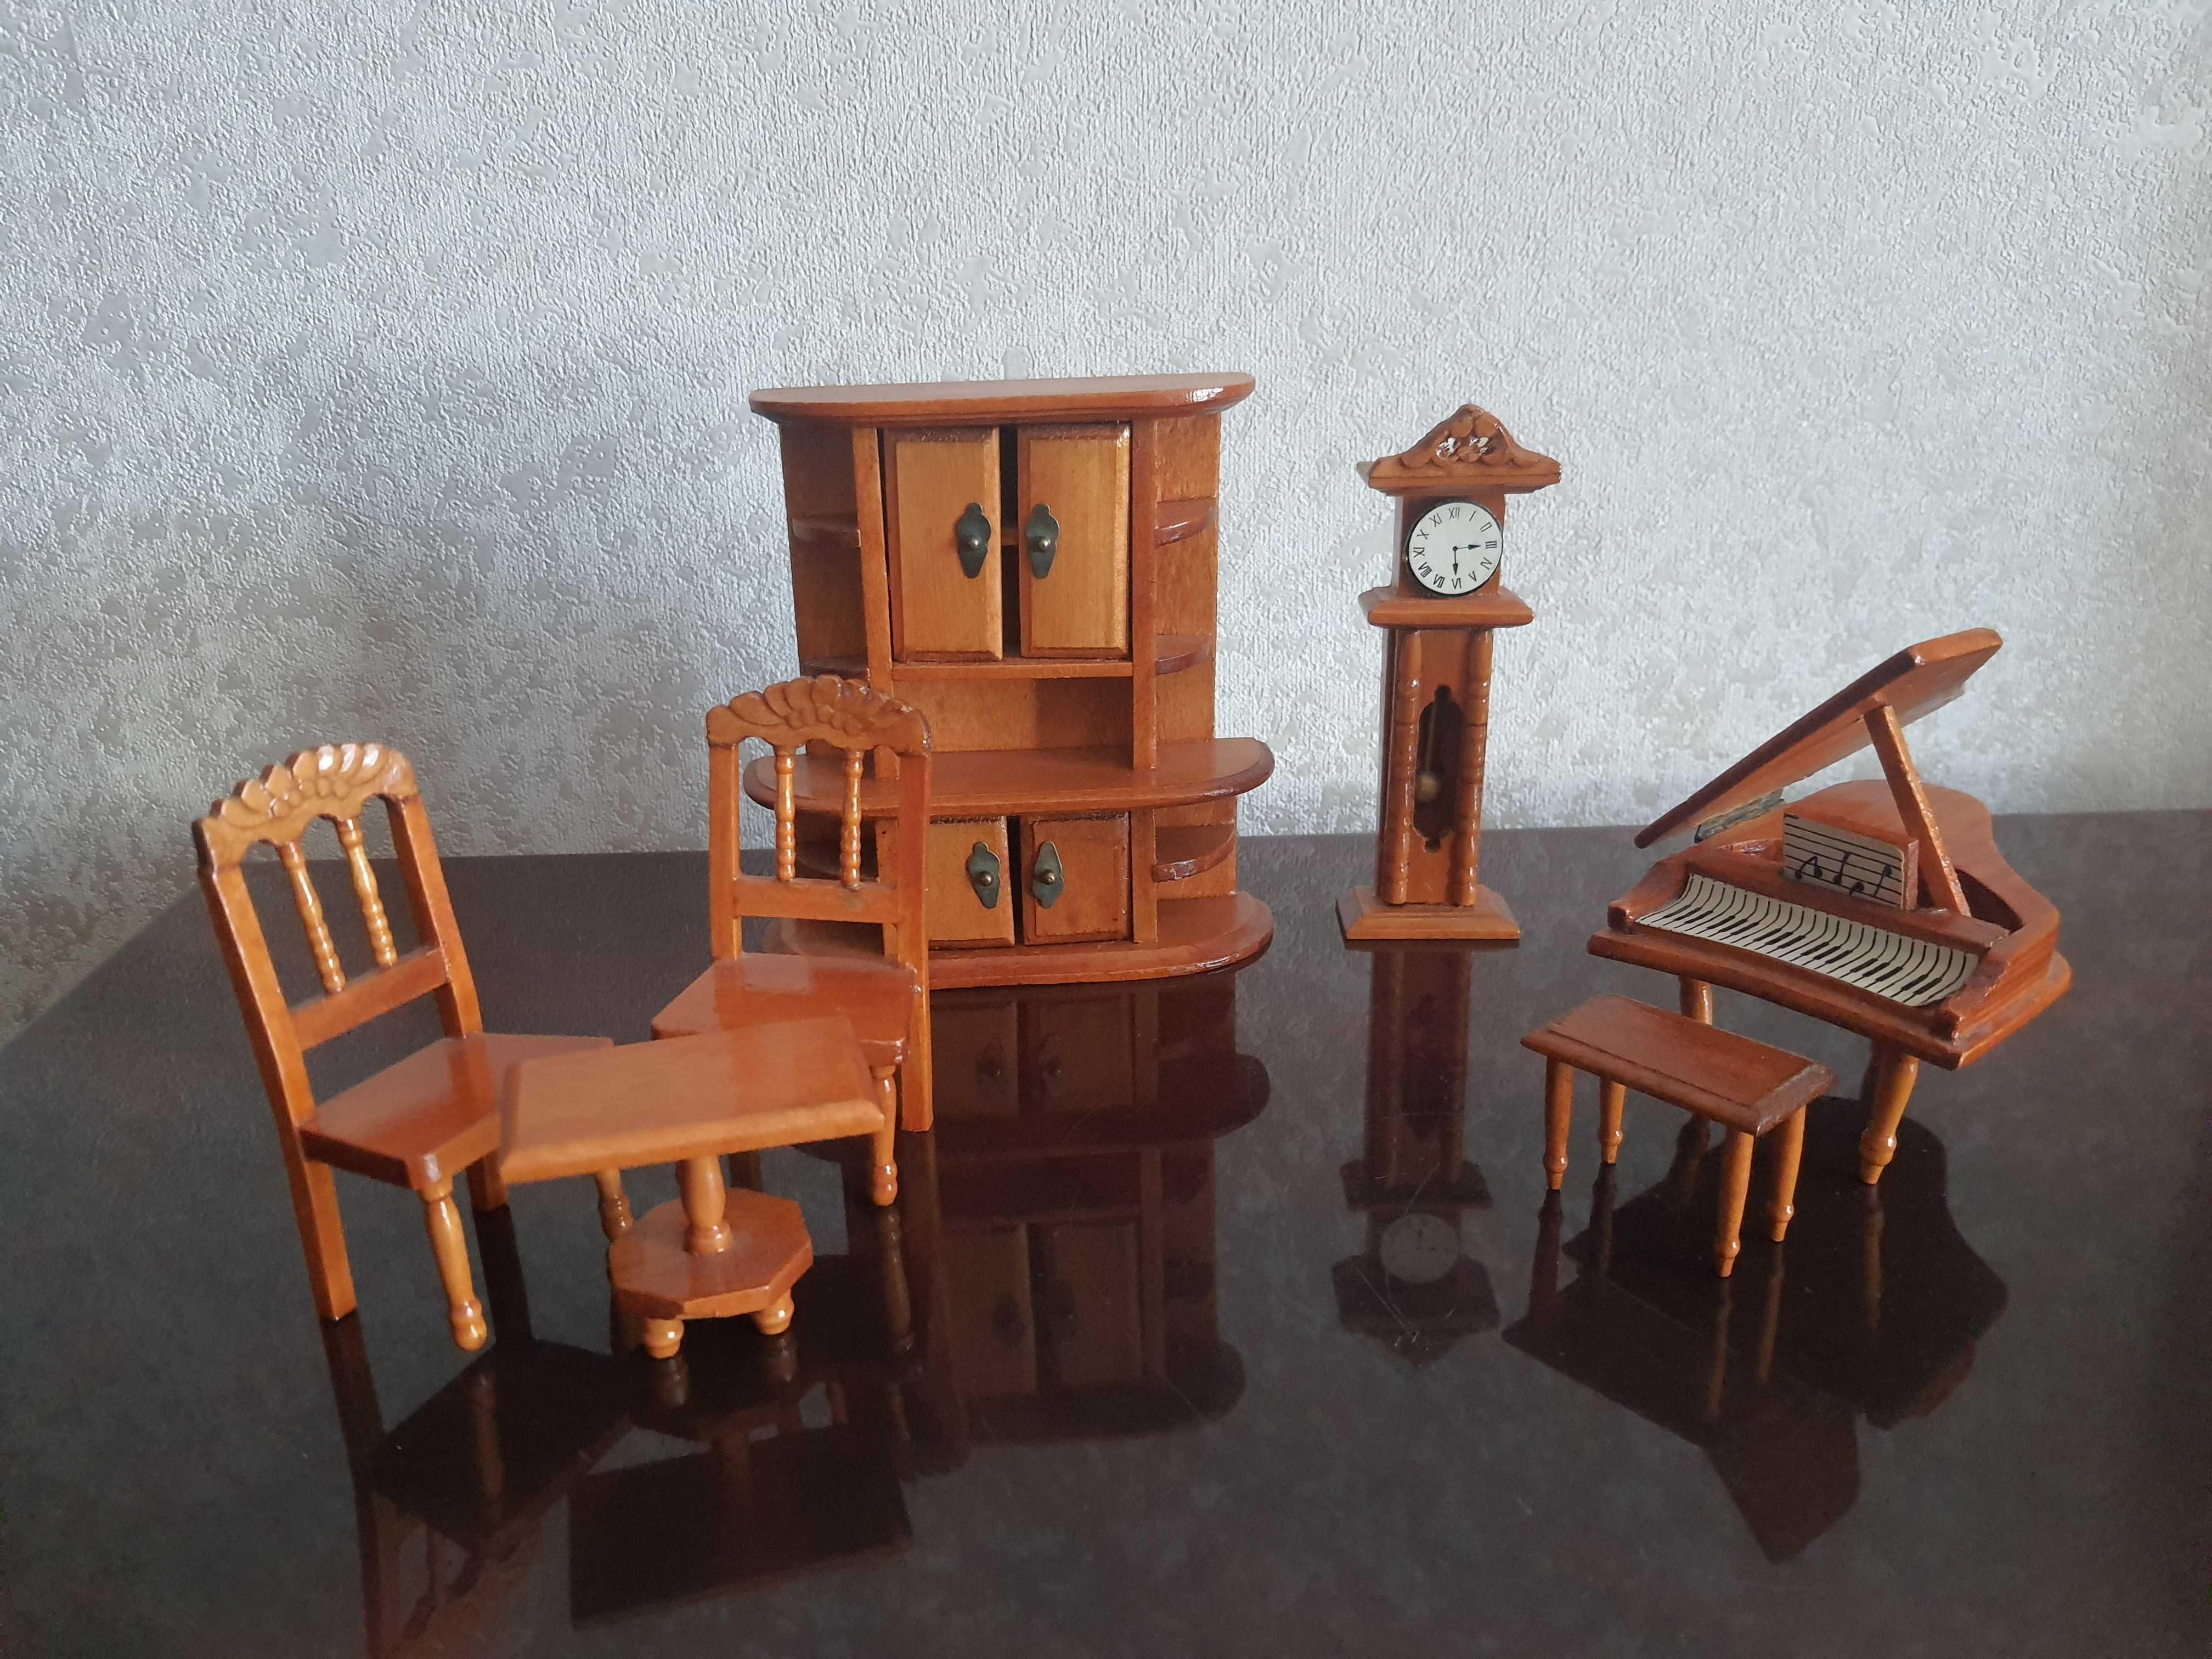 Мебель миниатюрная: шкаф, стулья,столик, рояль, часы. Франция, дерево